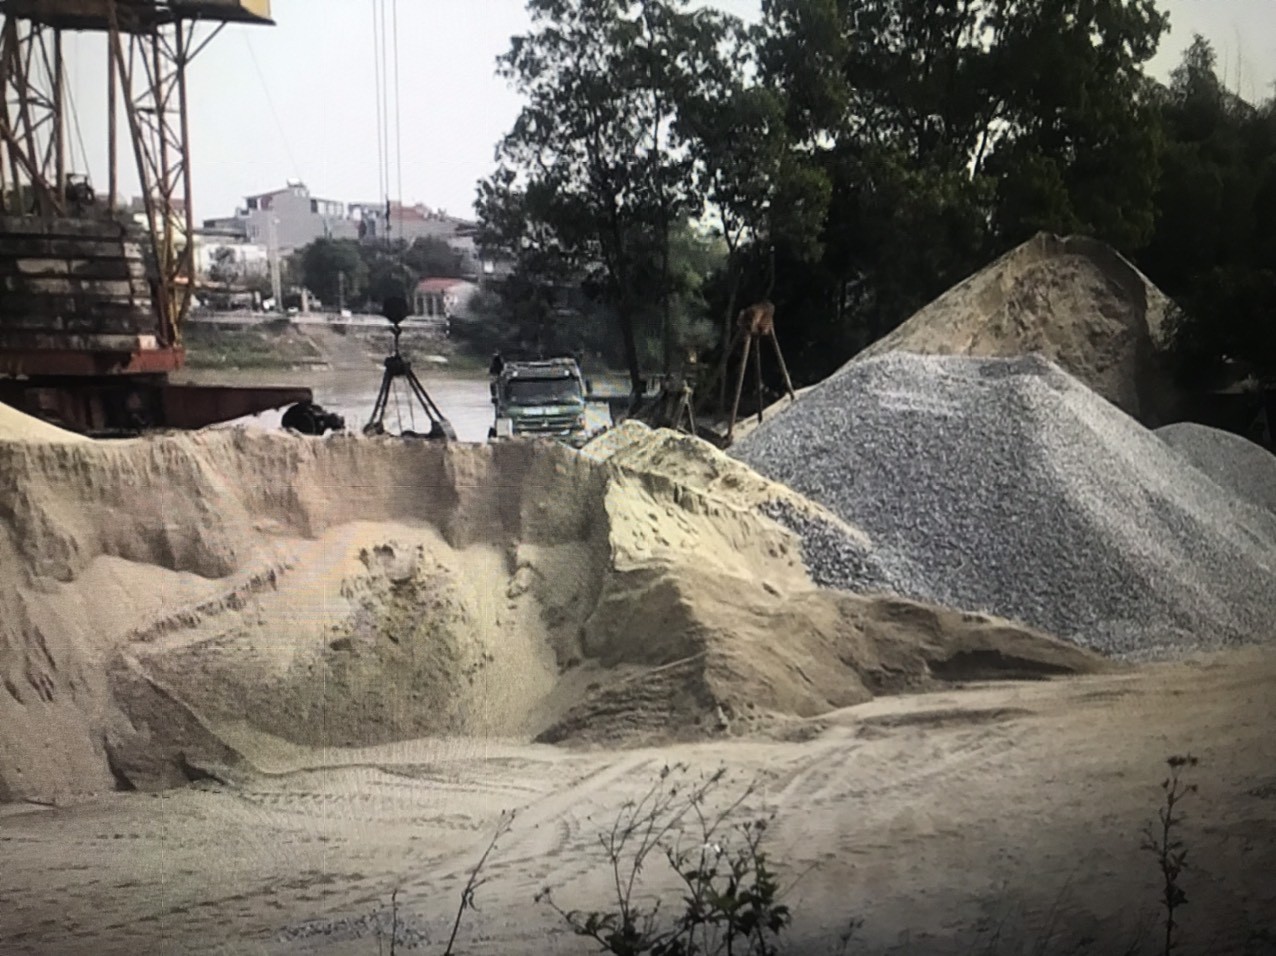 Môi trường - Lục Nam: Ô nhiễm môi trường nghiêm trọng từ các bãi than, cát và lò gạch vẫn chưa được xử lý (Bài 2)